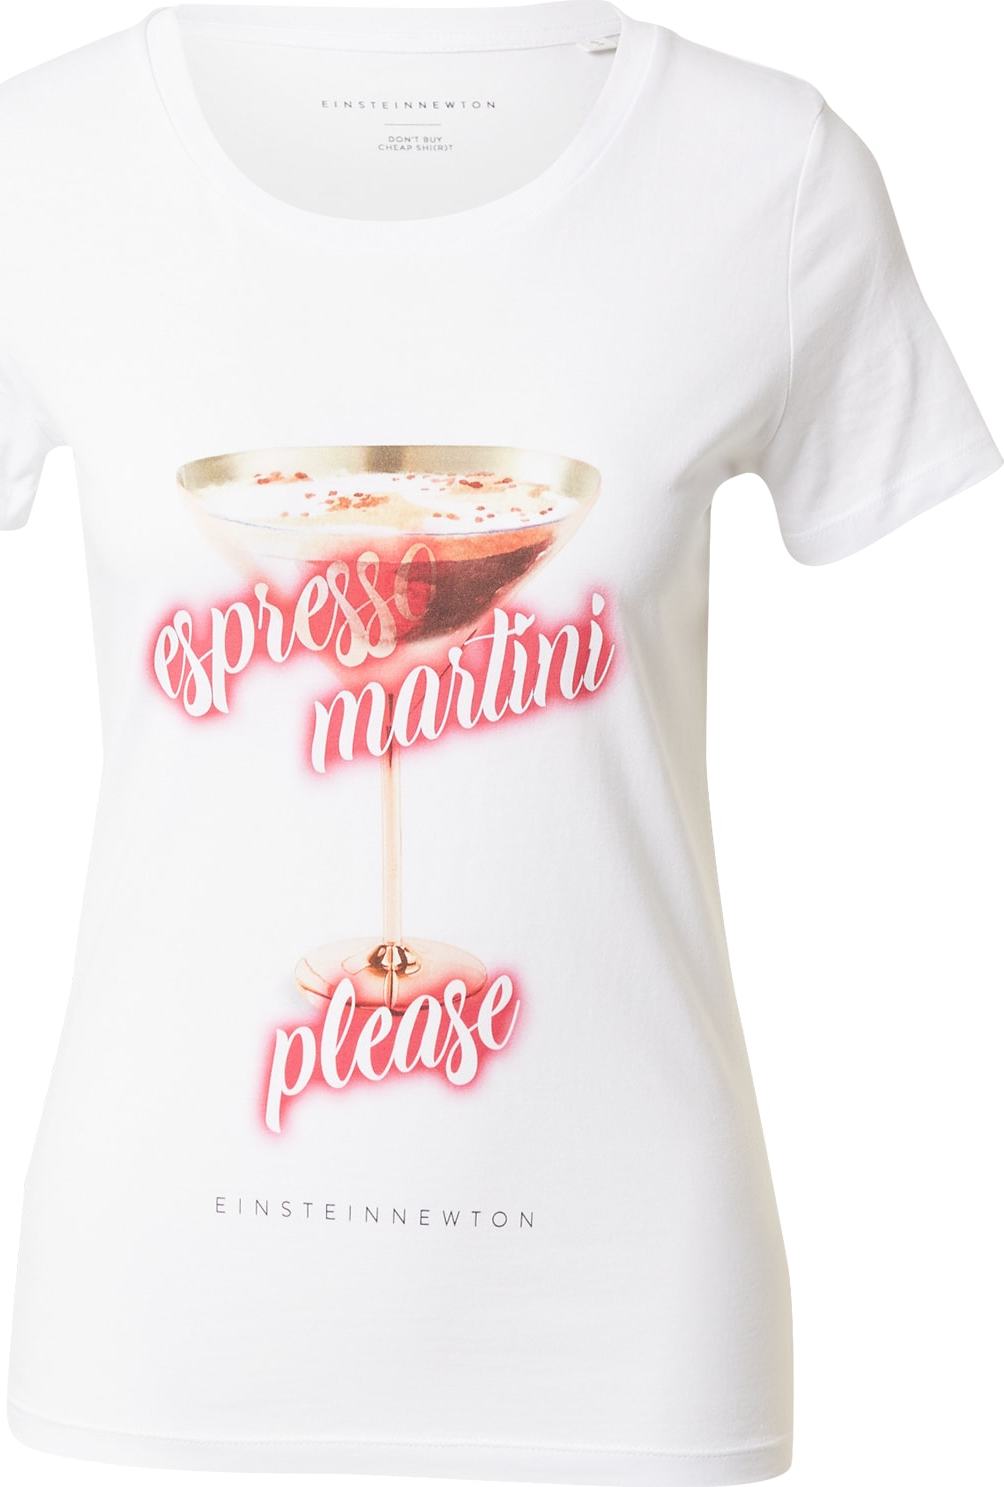 Tričko 'Espresso Martini' einstein & newton hnědá / červená / bílá